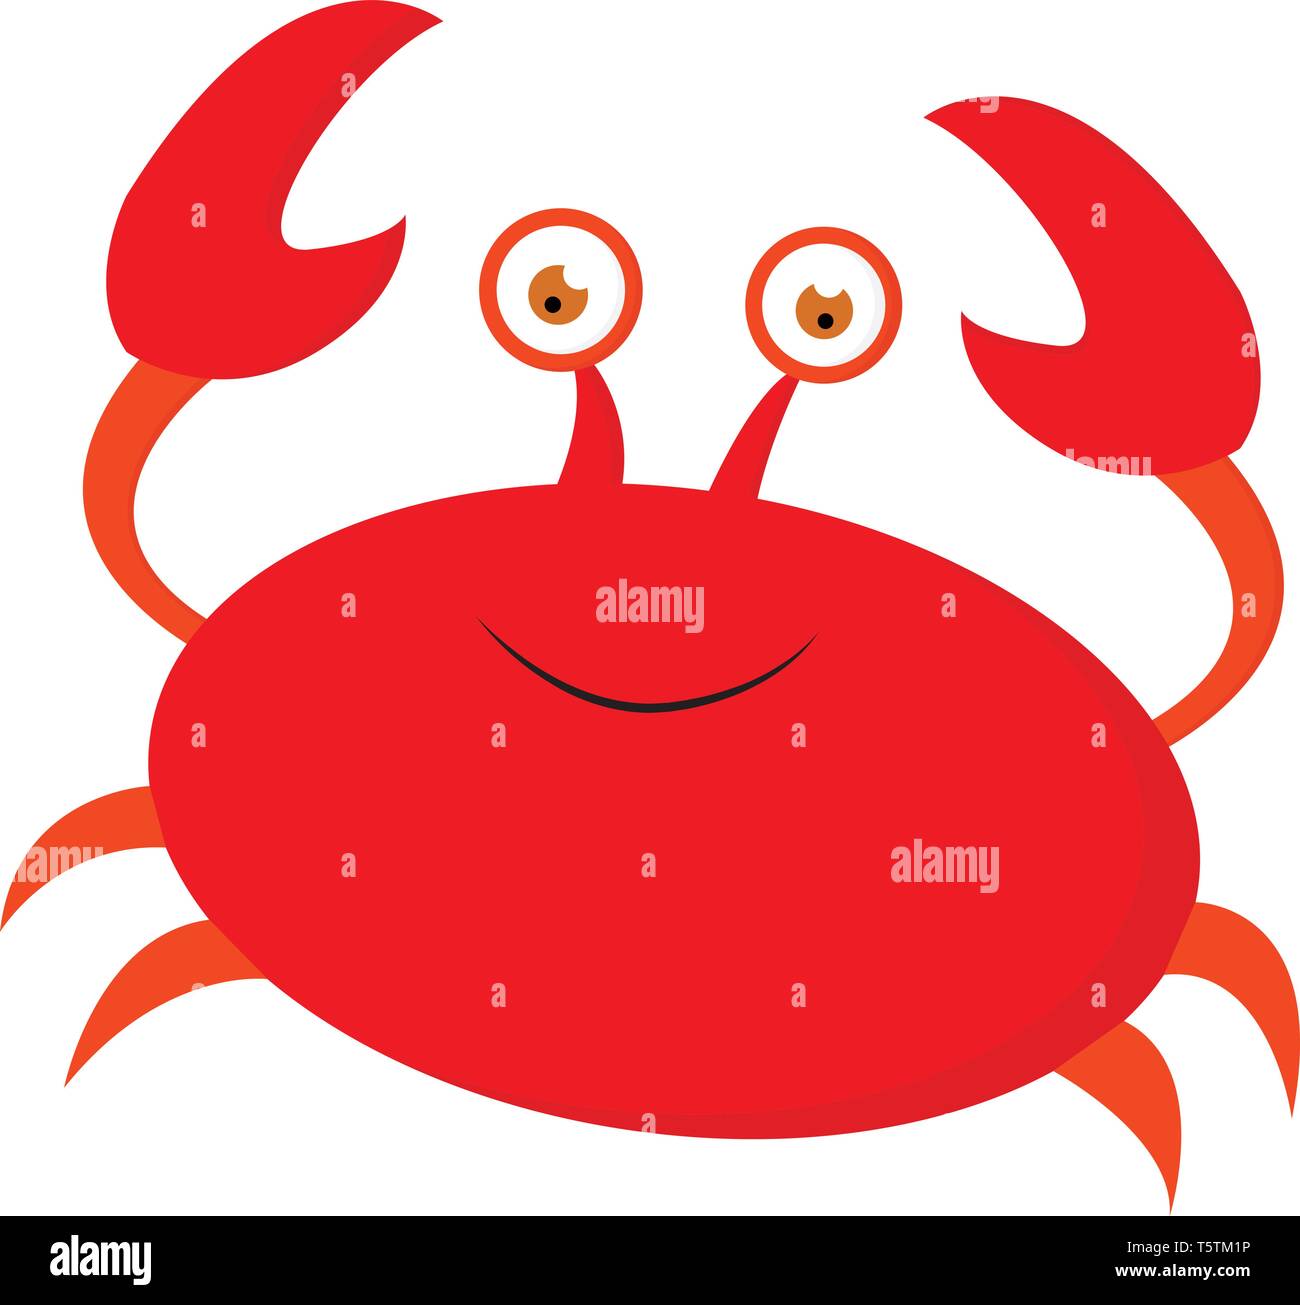 A smiling cute little red cartoon avec deux pinces de crabe des quatre pattes et deux yeux exorbités est extrêmement heureux de couleur ou de dessin vectoriel illust Illustration de Vecteur